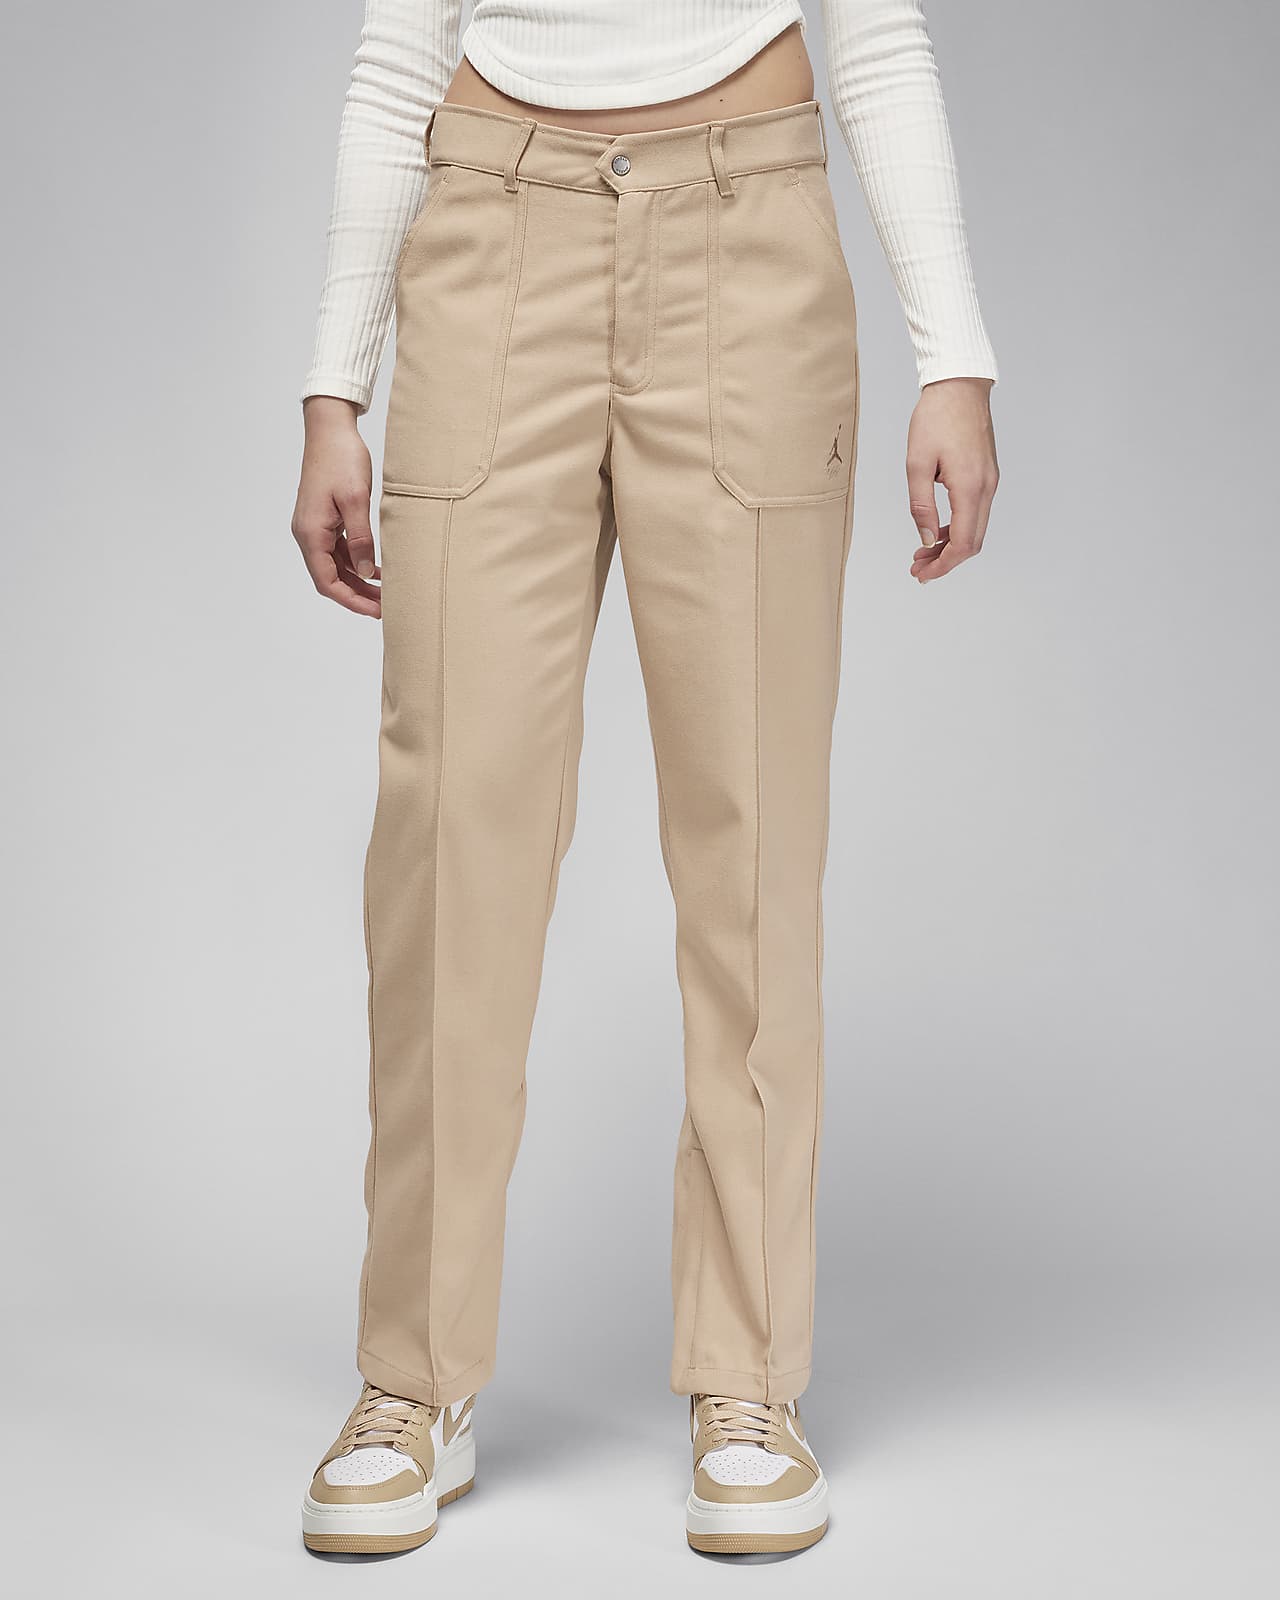 Women's Clothing - Dance All-Gender Versatile Woven Cargo Pants - White